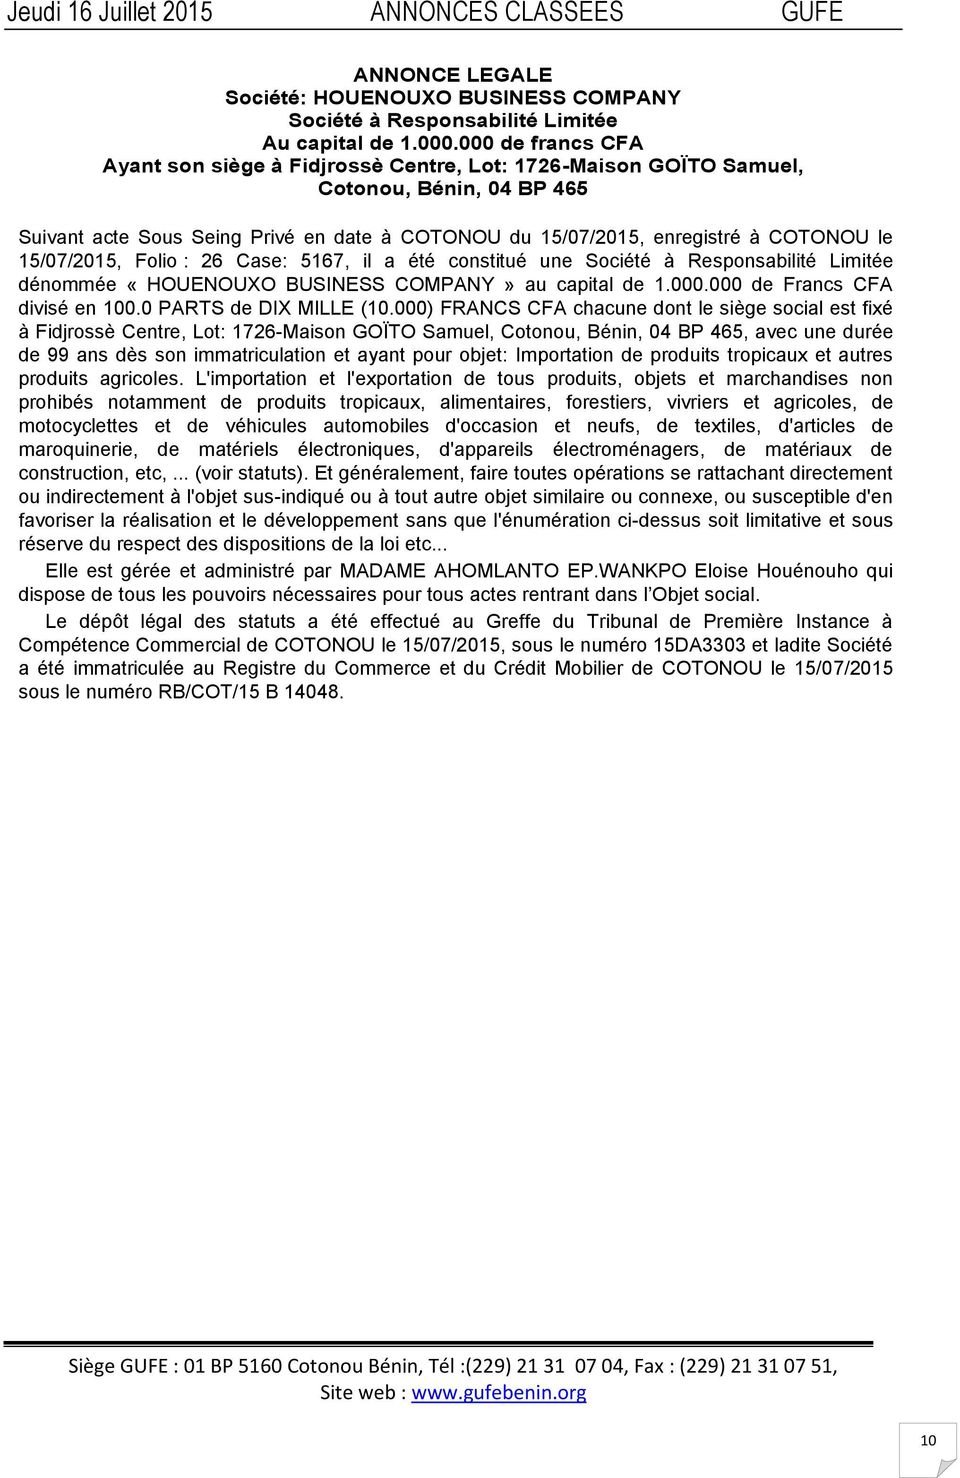 15/07/2015, Folio : 26 Case: 5167, il a été constitué une Société à Responsabilité Limitée dénommée «HOUENOUXO BUSINESS COMPANY» au capital de 1.000.000 de Francs CFA divisé en 100.